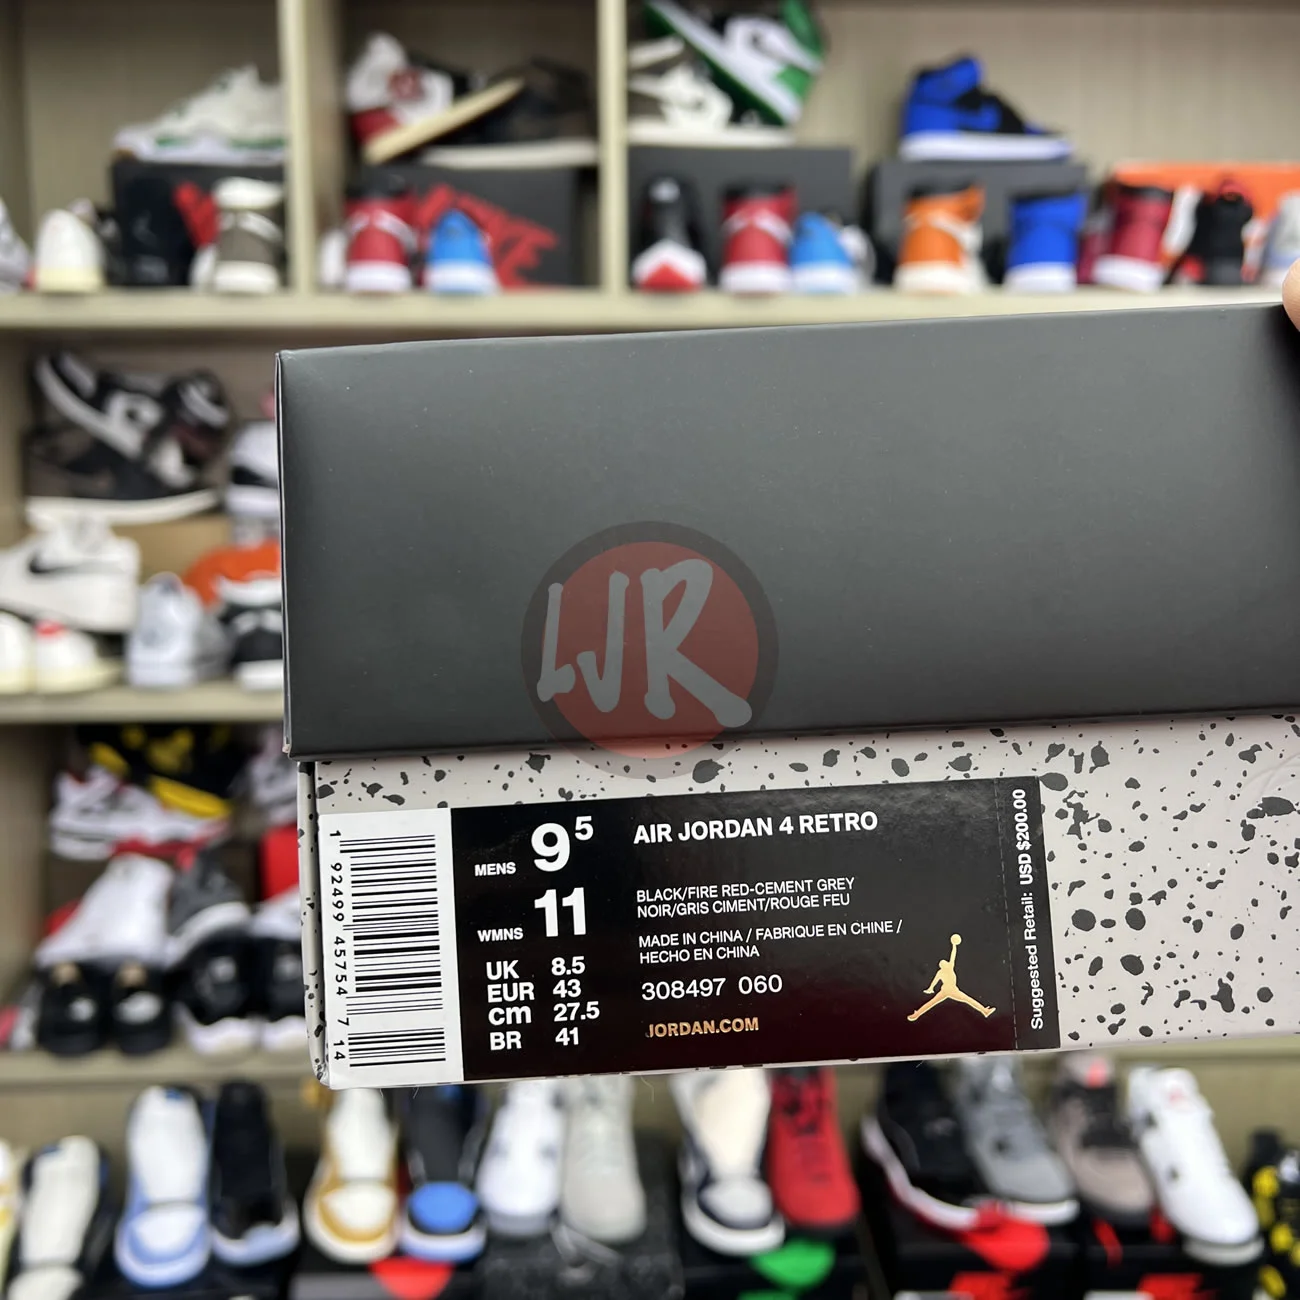 Air Jordan 4 Retro Bred 2019 308497 060 Ljr Sneakers (11) - bc-ljr.com